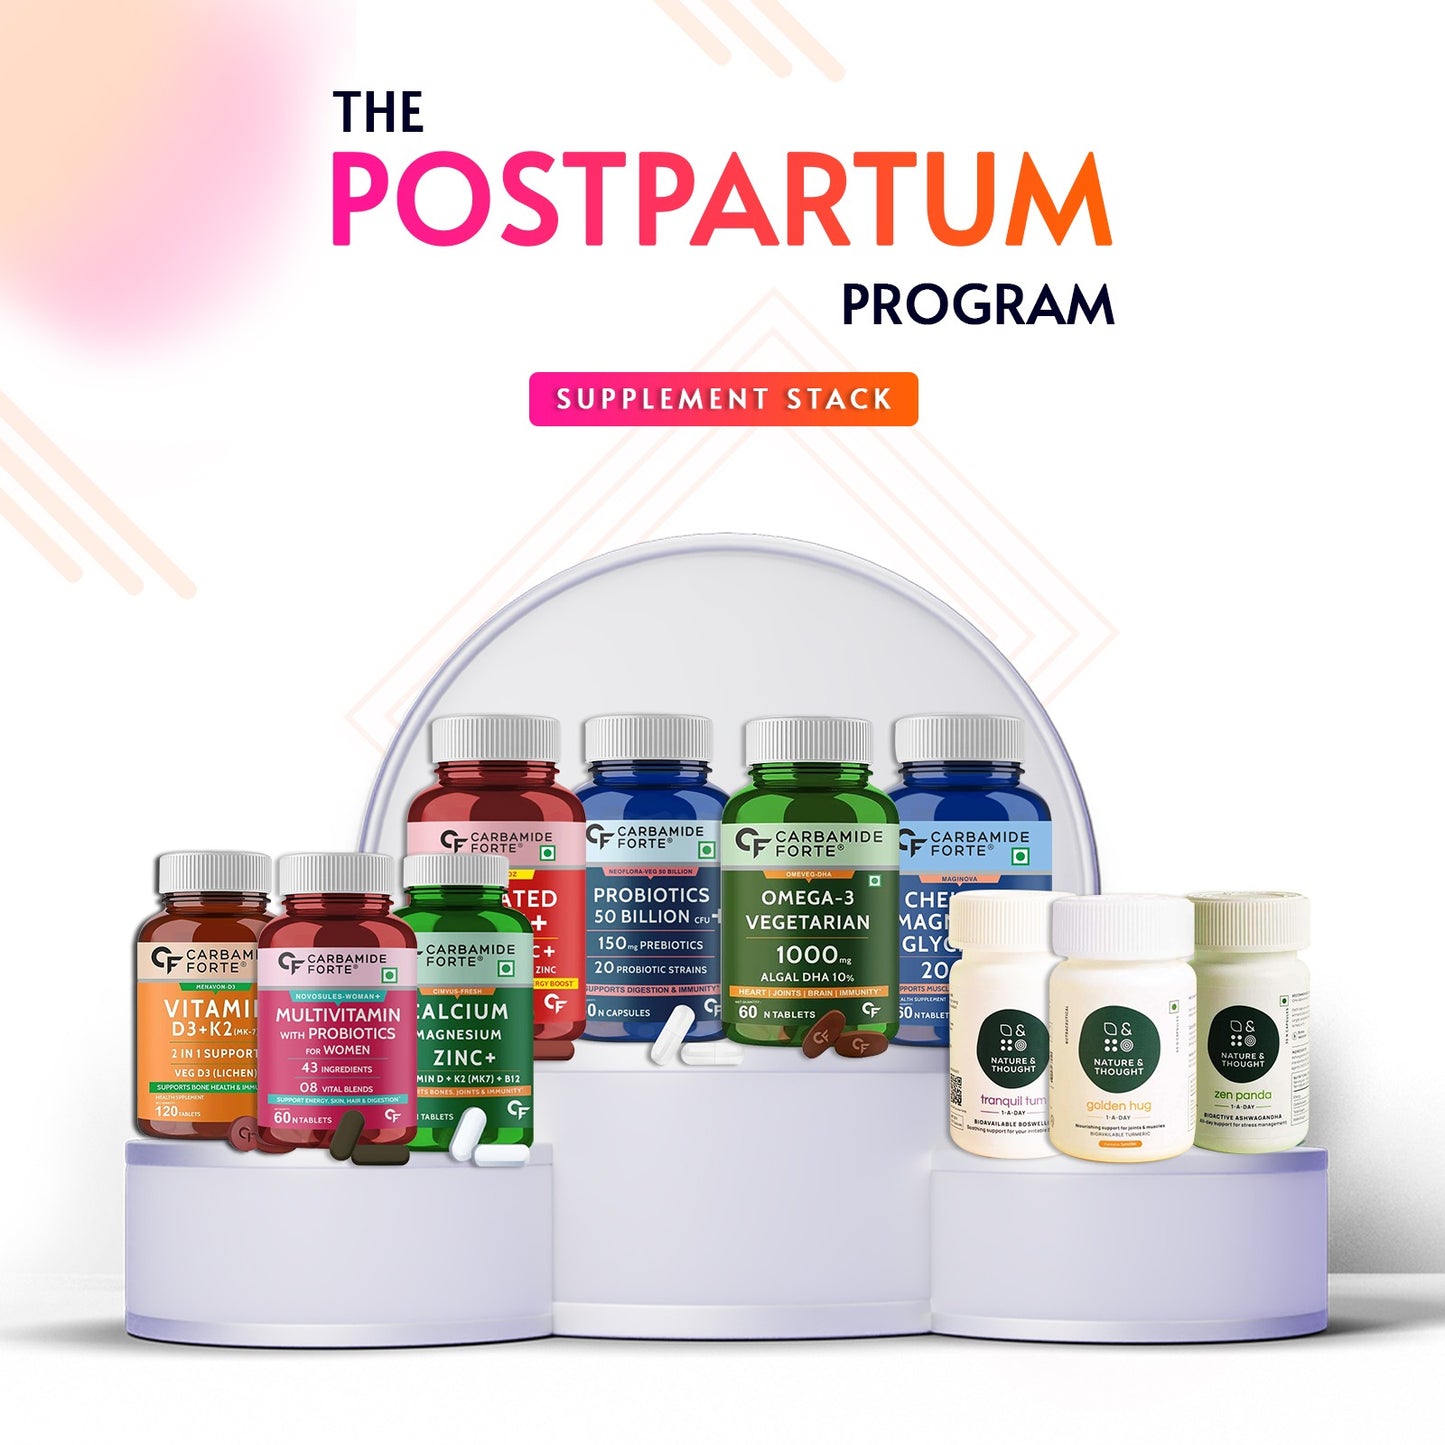 Postpartum supplement stack